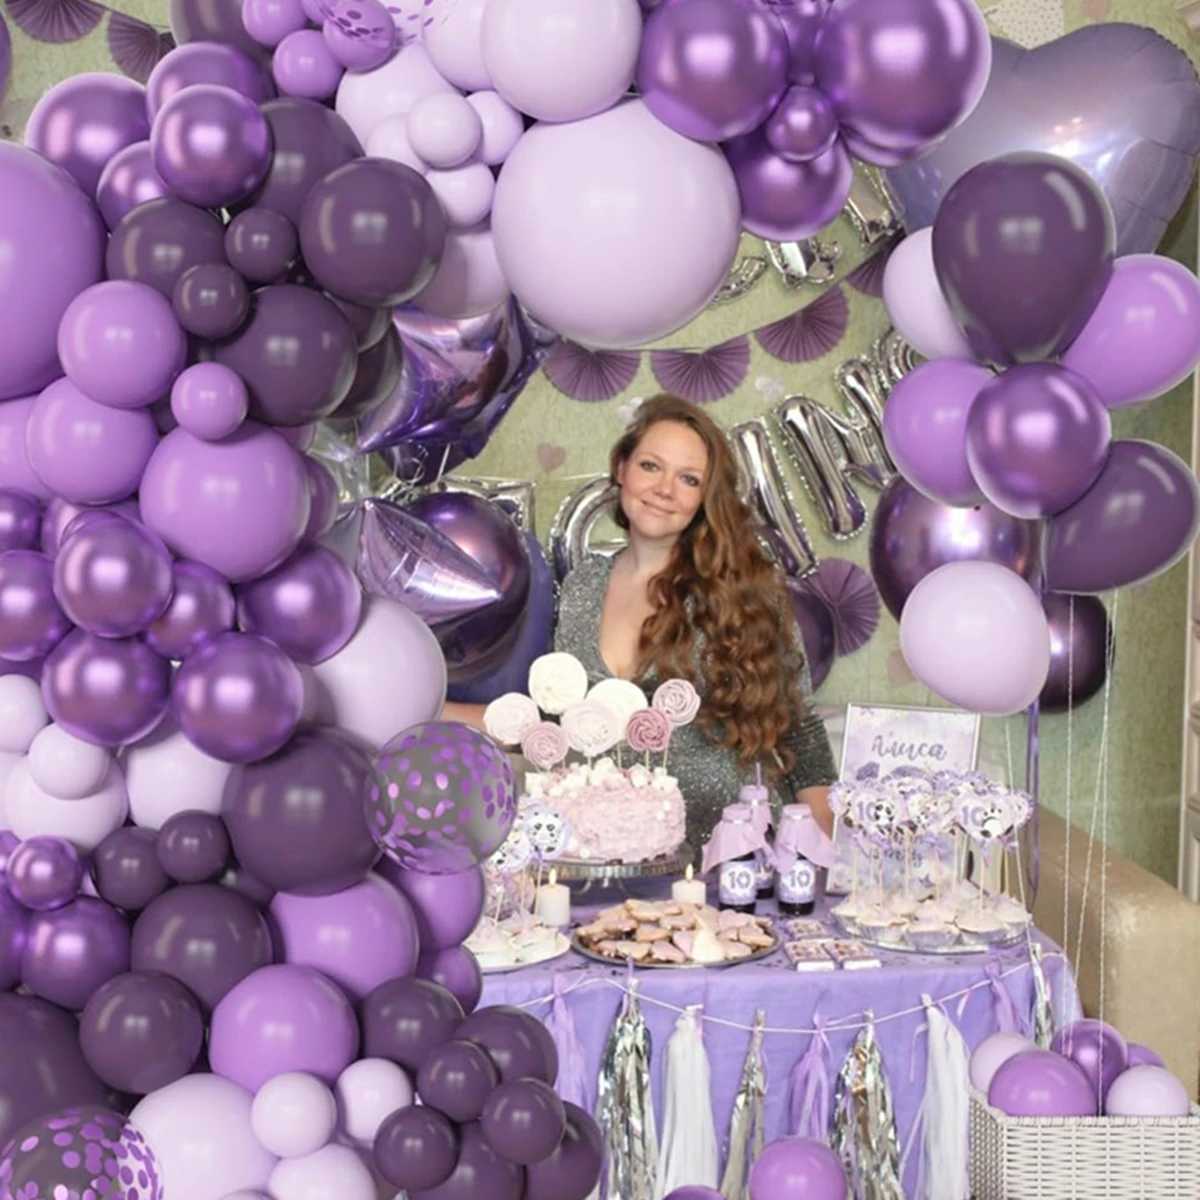 Imprezy balony fioletowe balony girland arch arch